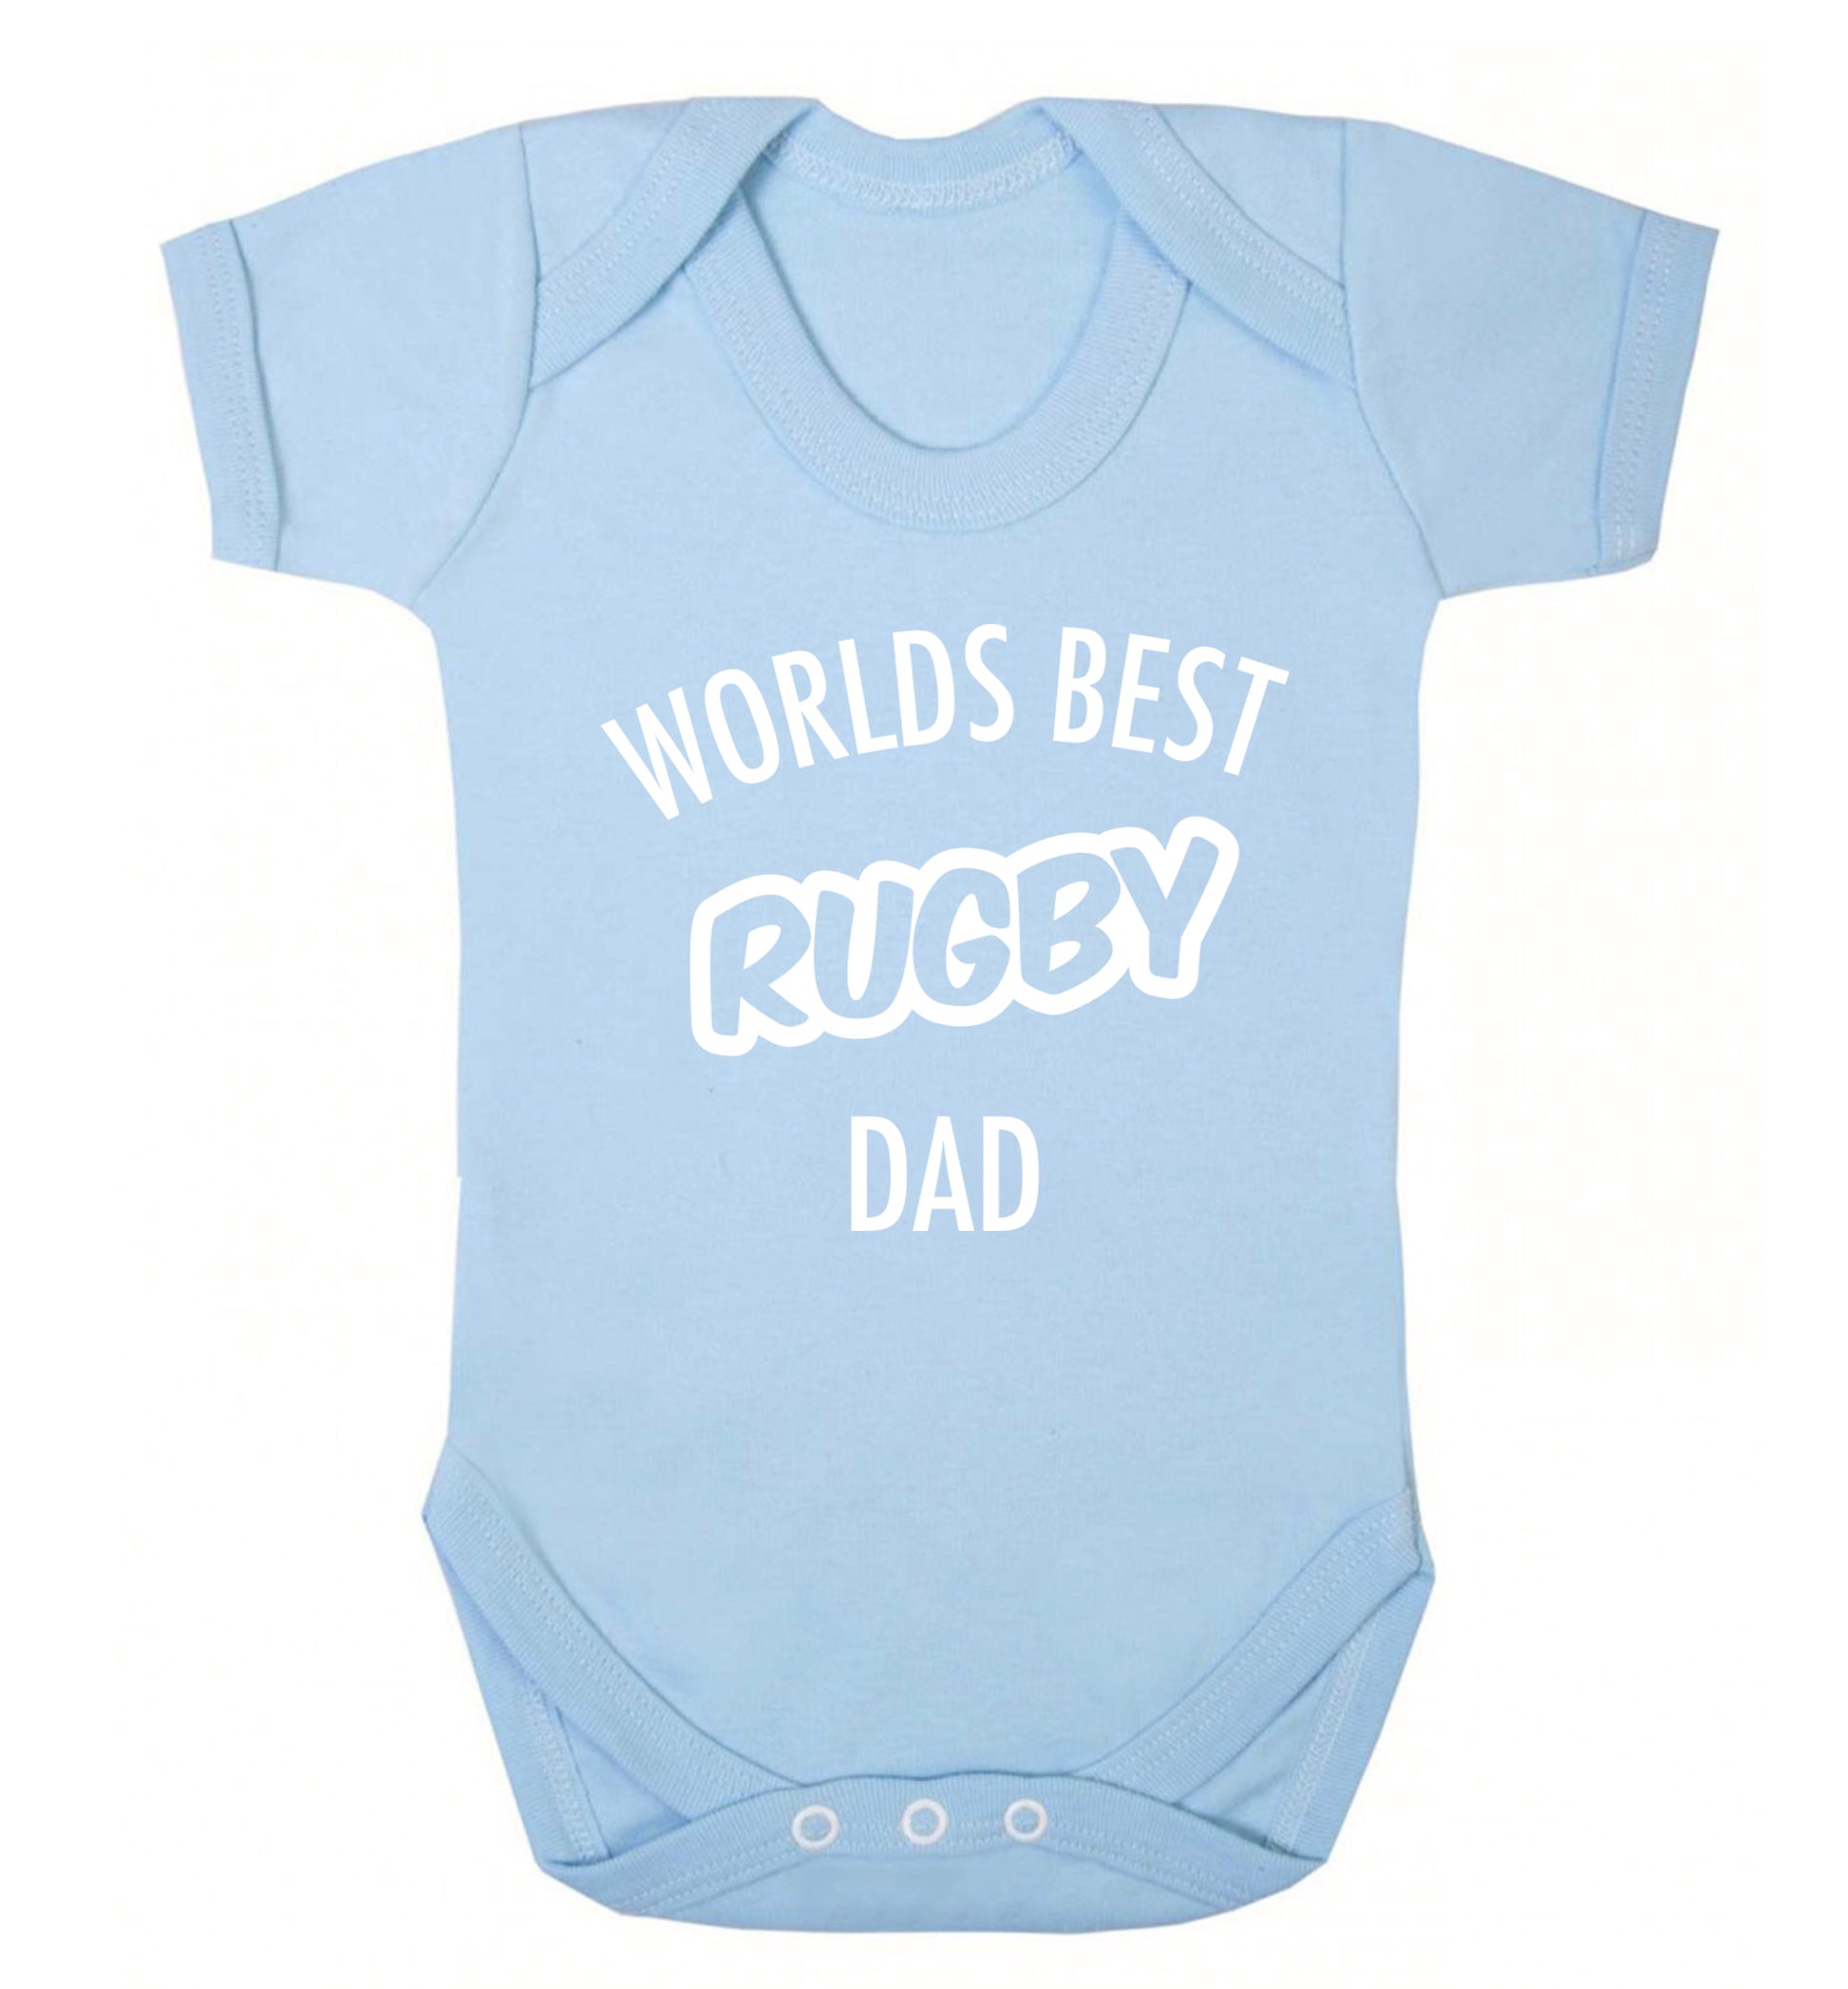 Worlds best rugby dad Baby Vest pale blue 18-24 months